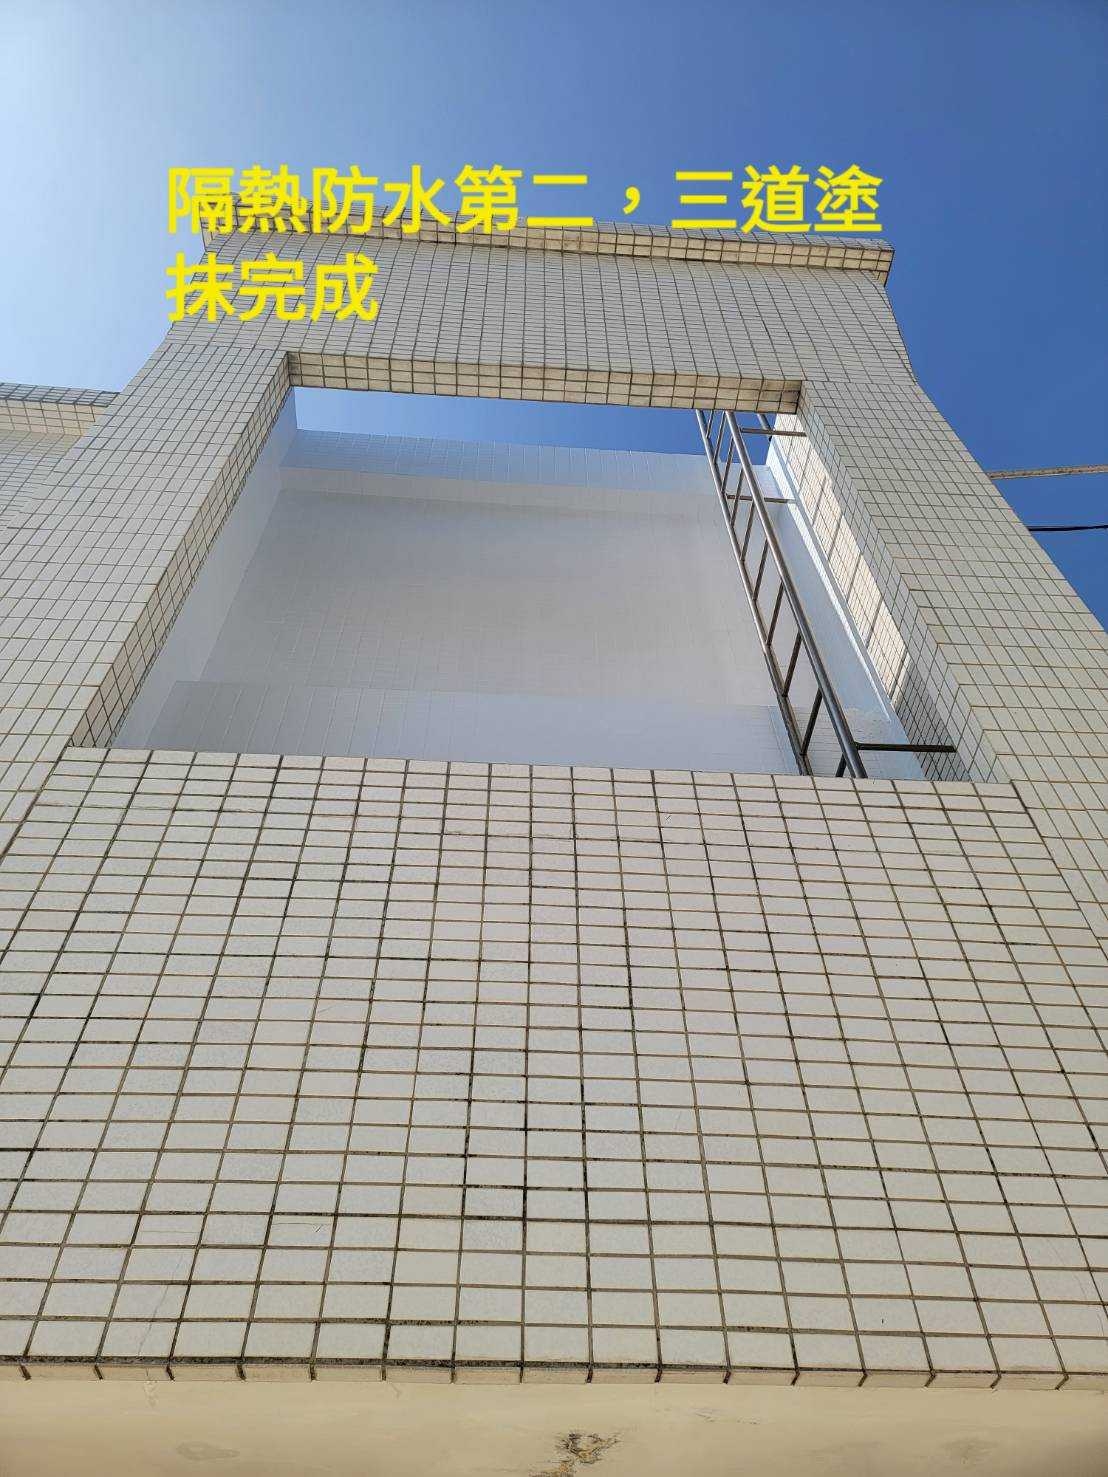 【台南屋頂防水工程】樓頂地板與外牆防水工程